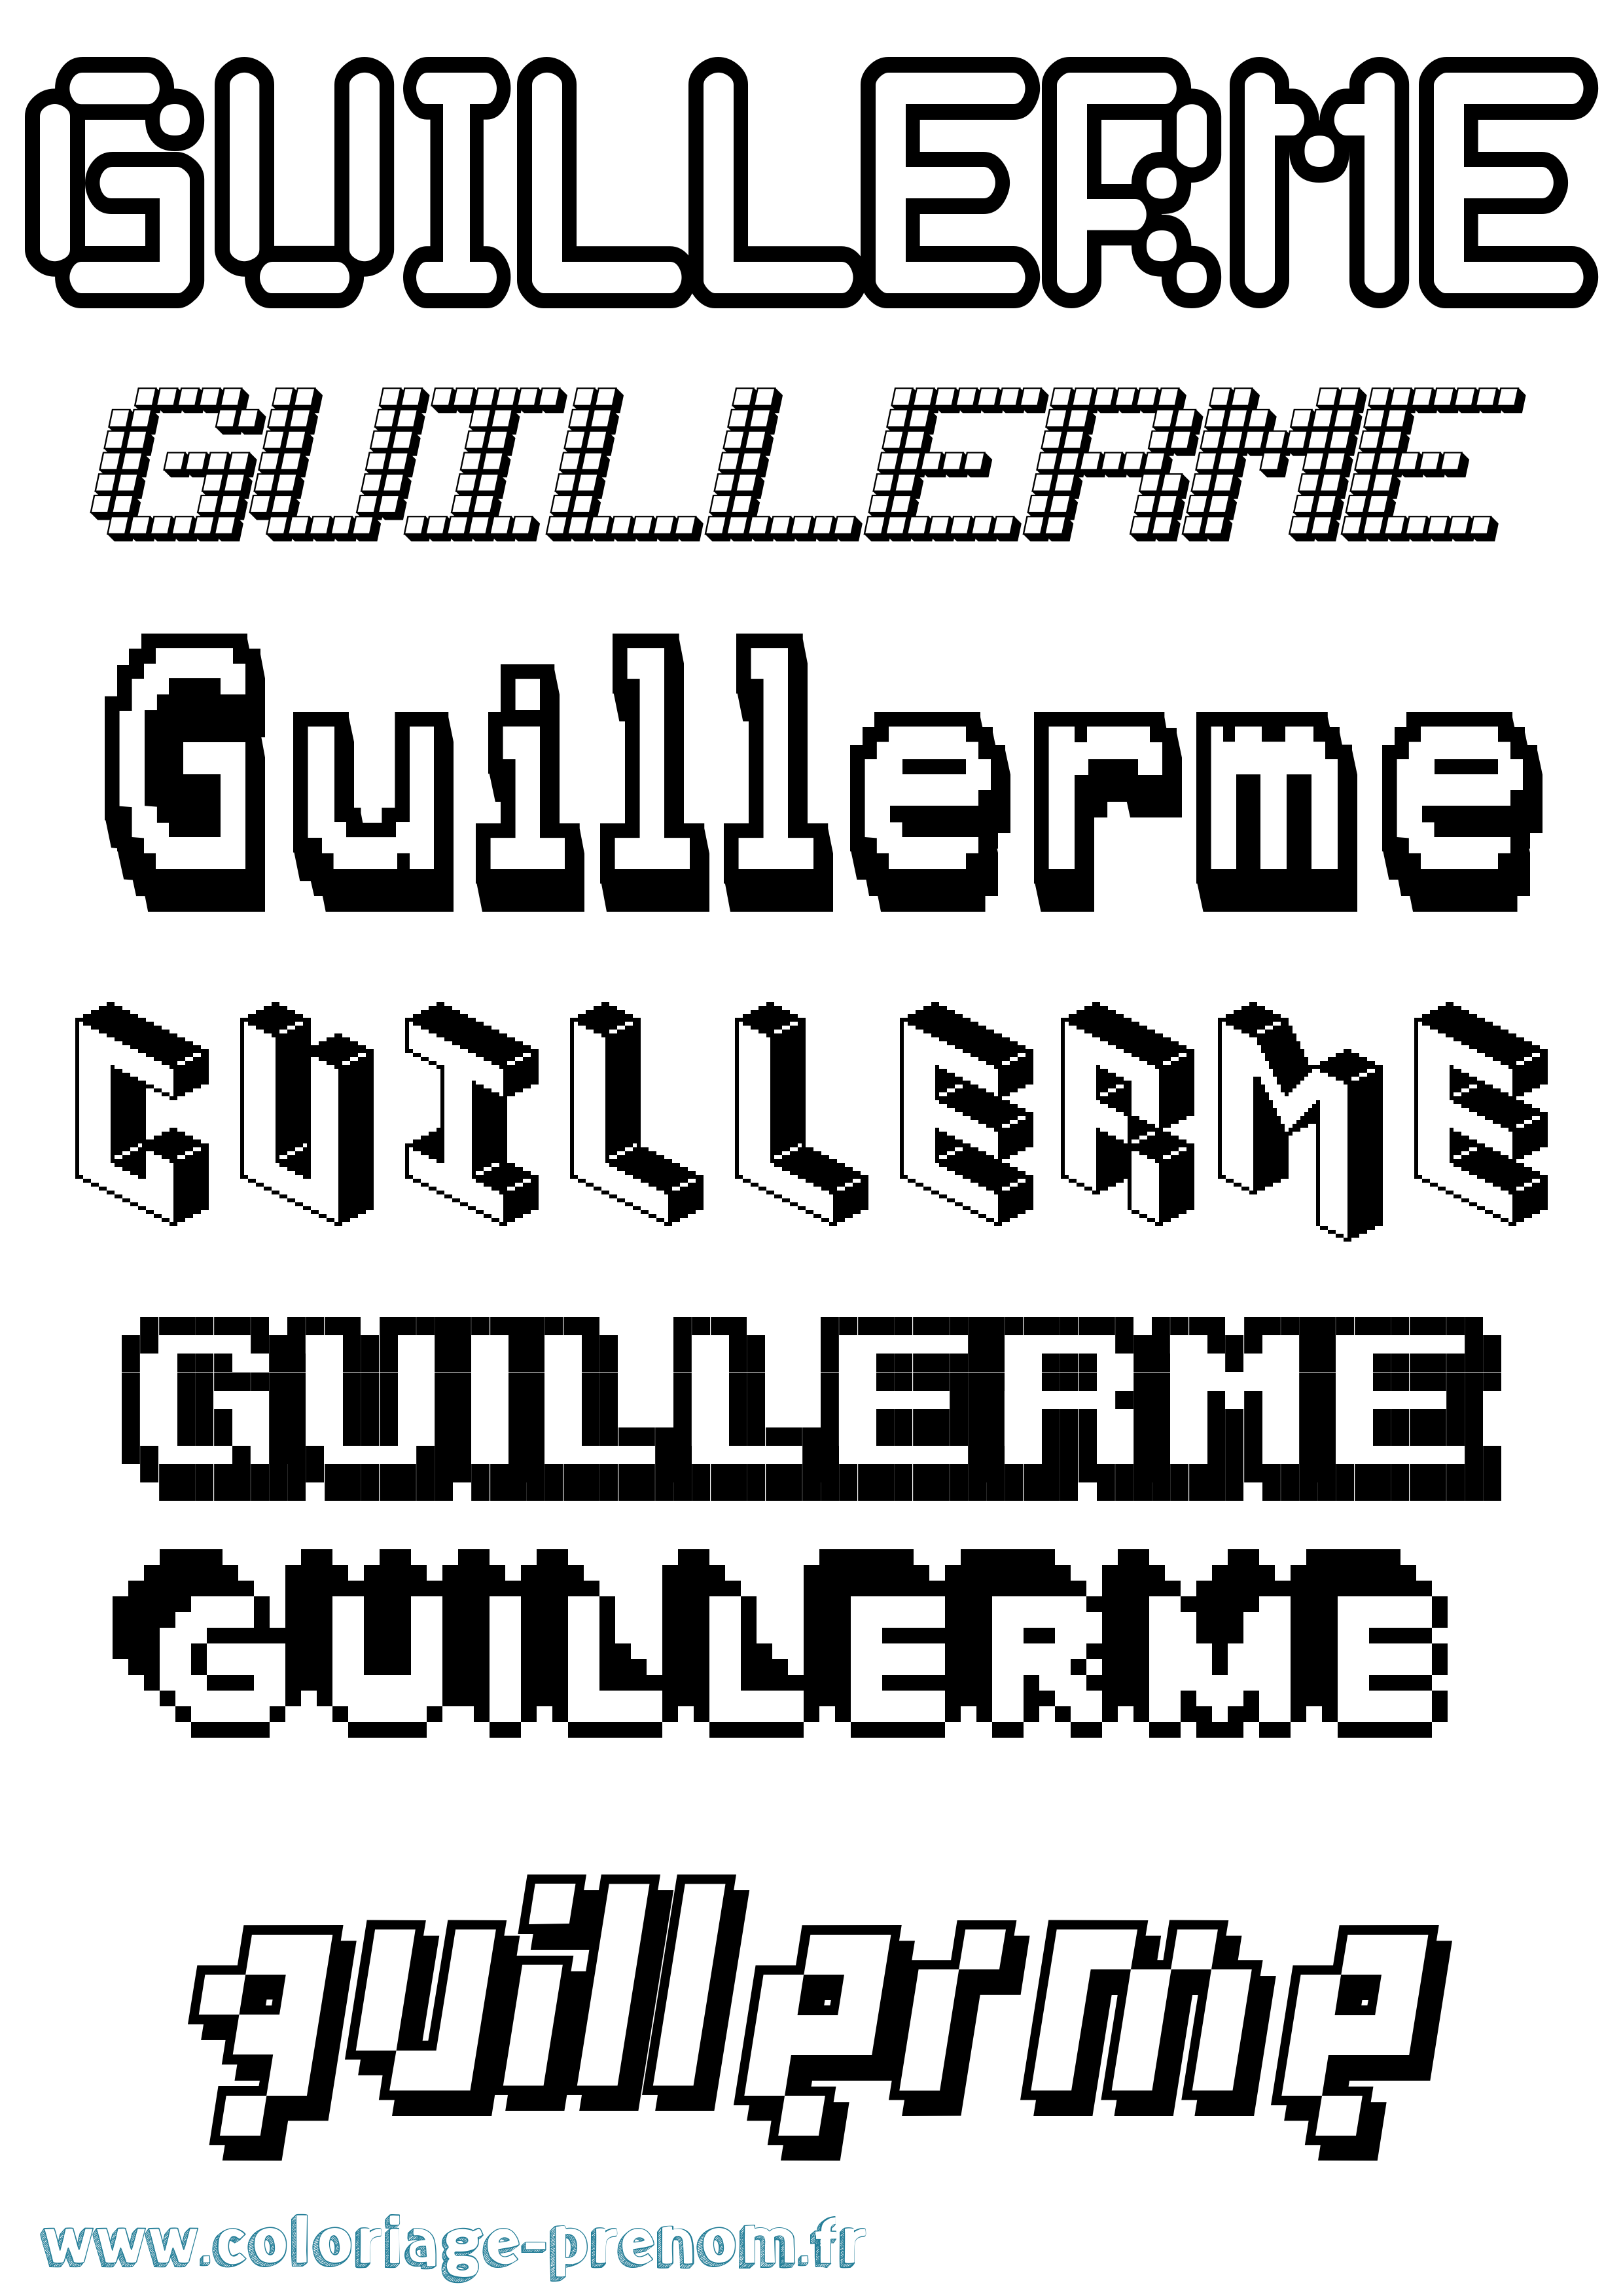 Coloriage prénom Guillerme Pixel